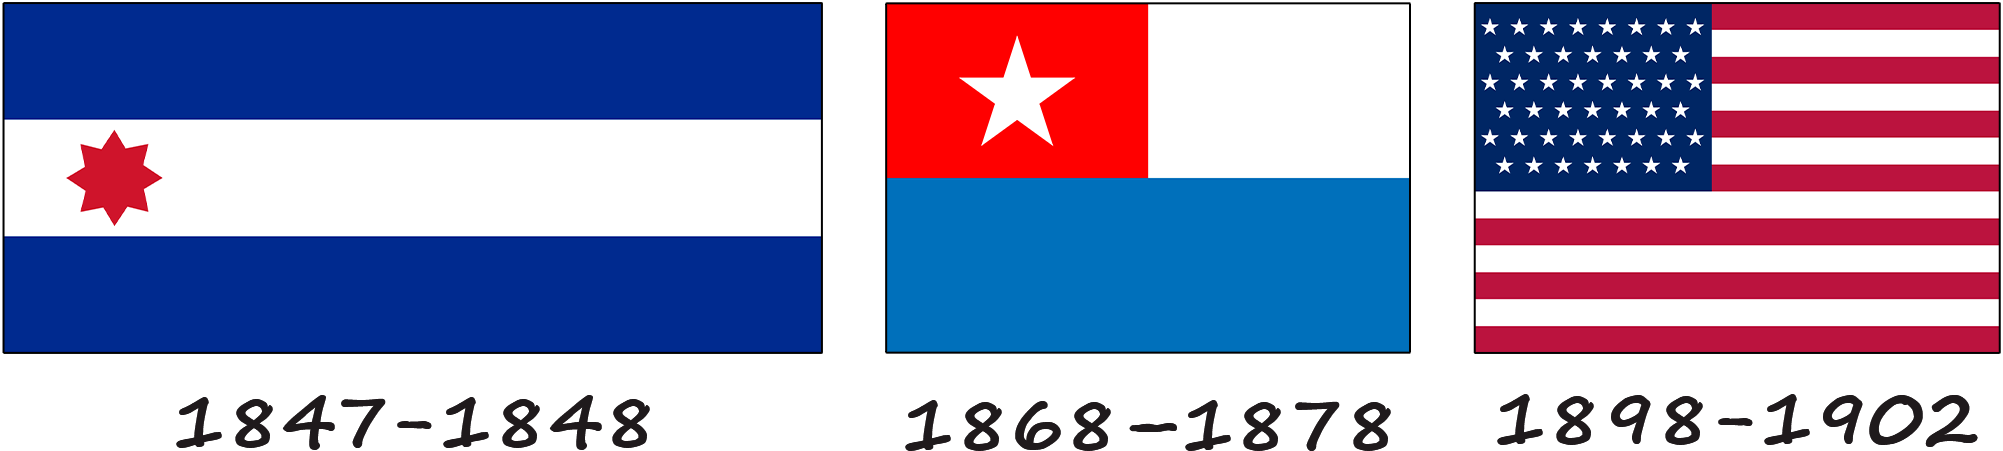 Historia de la bandera cubana